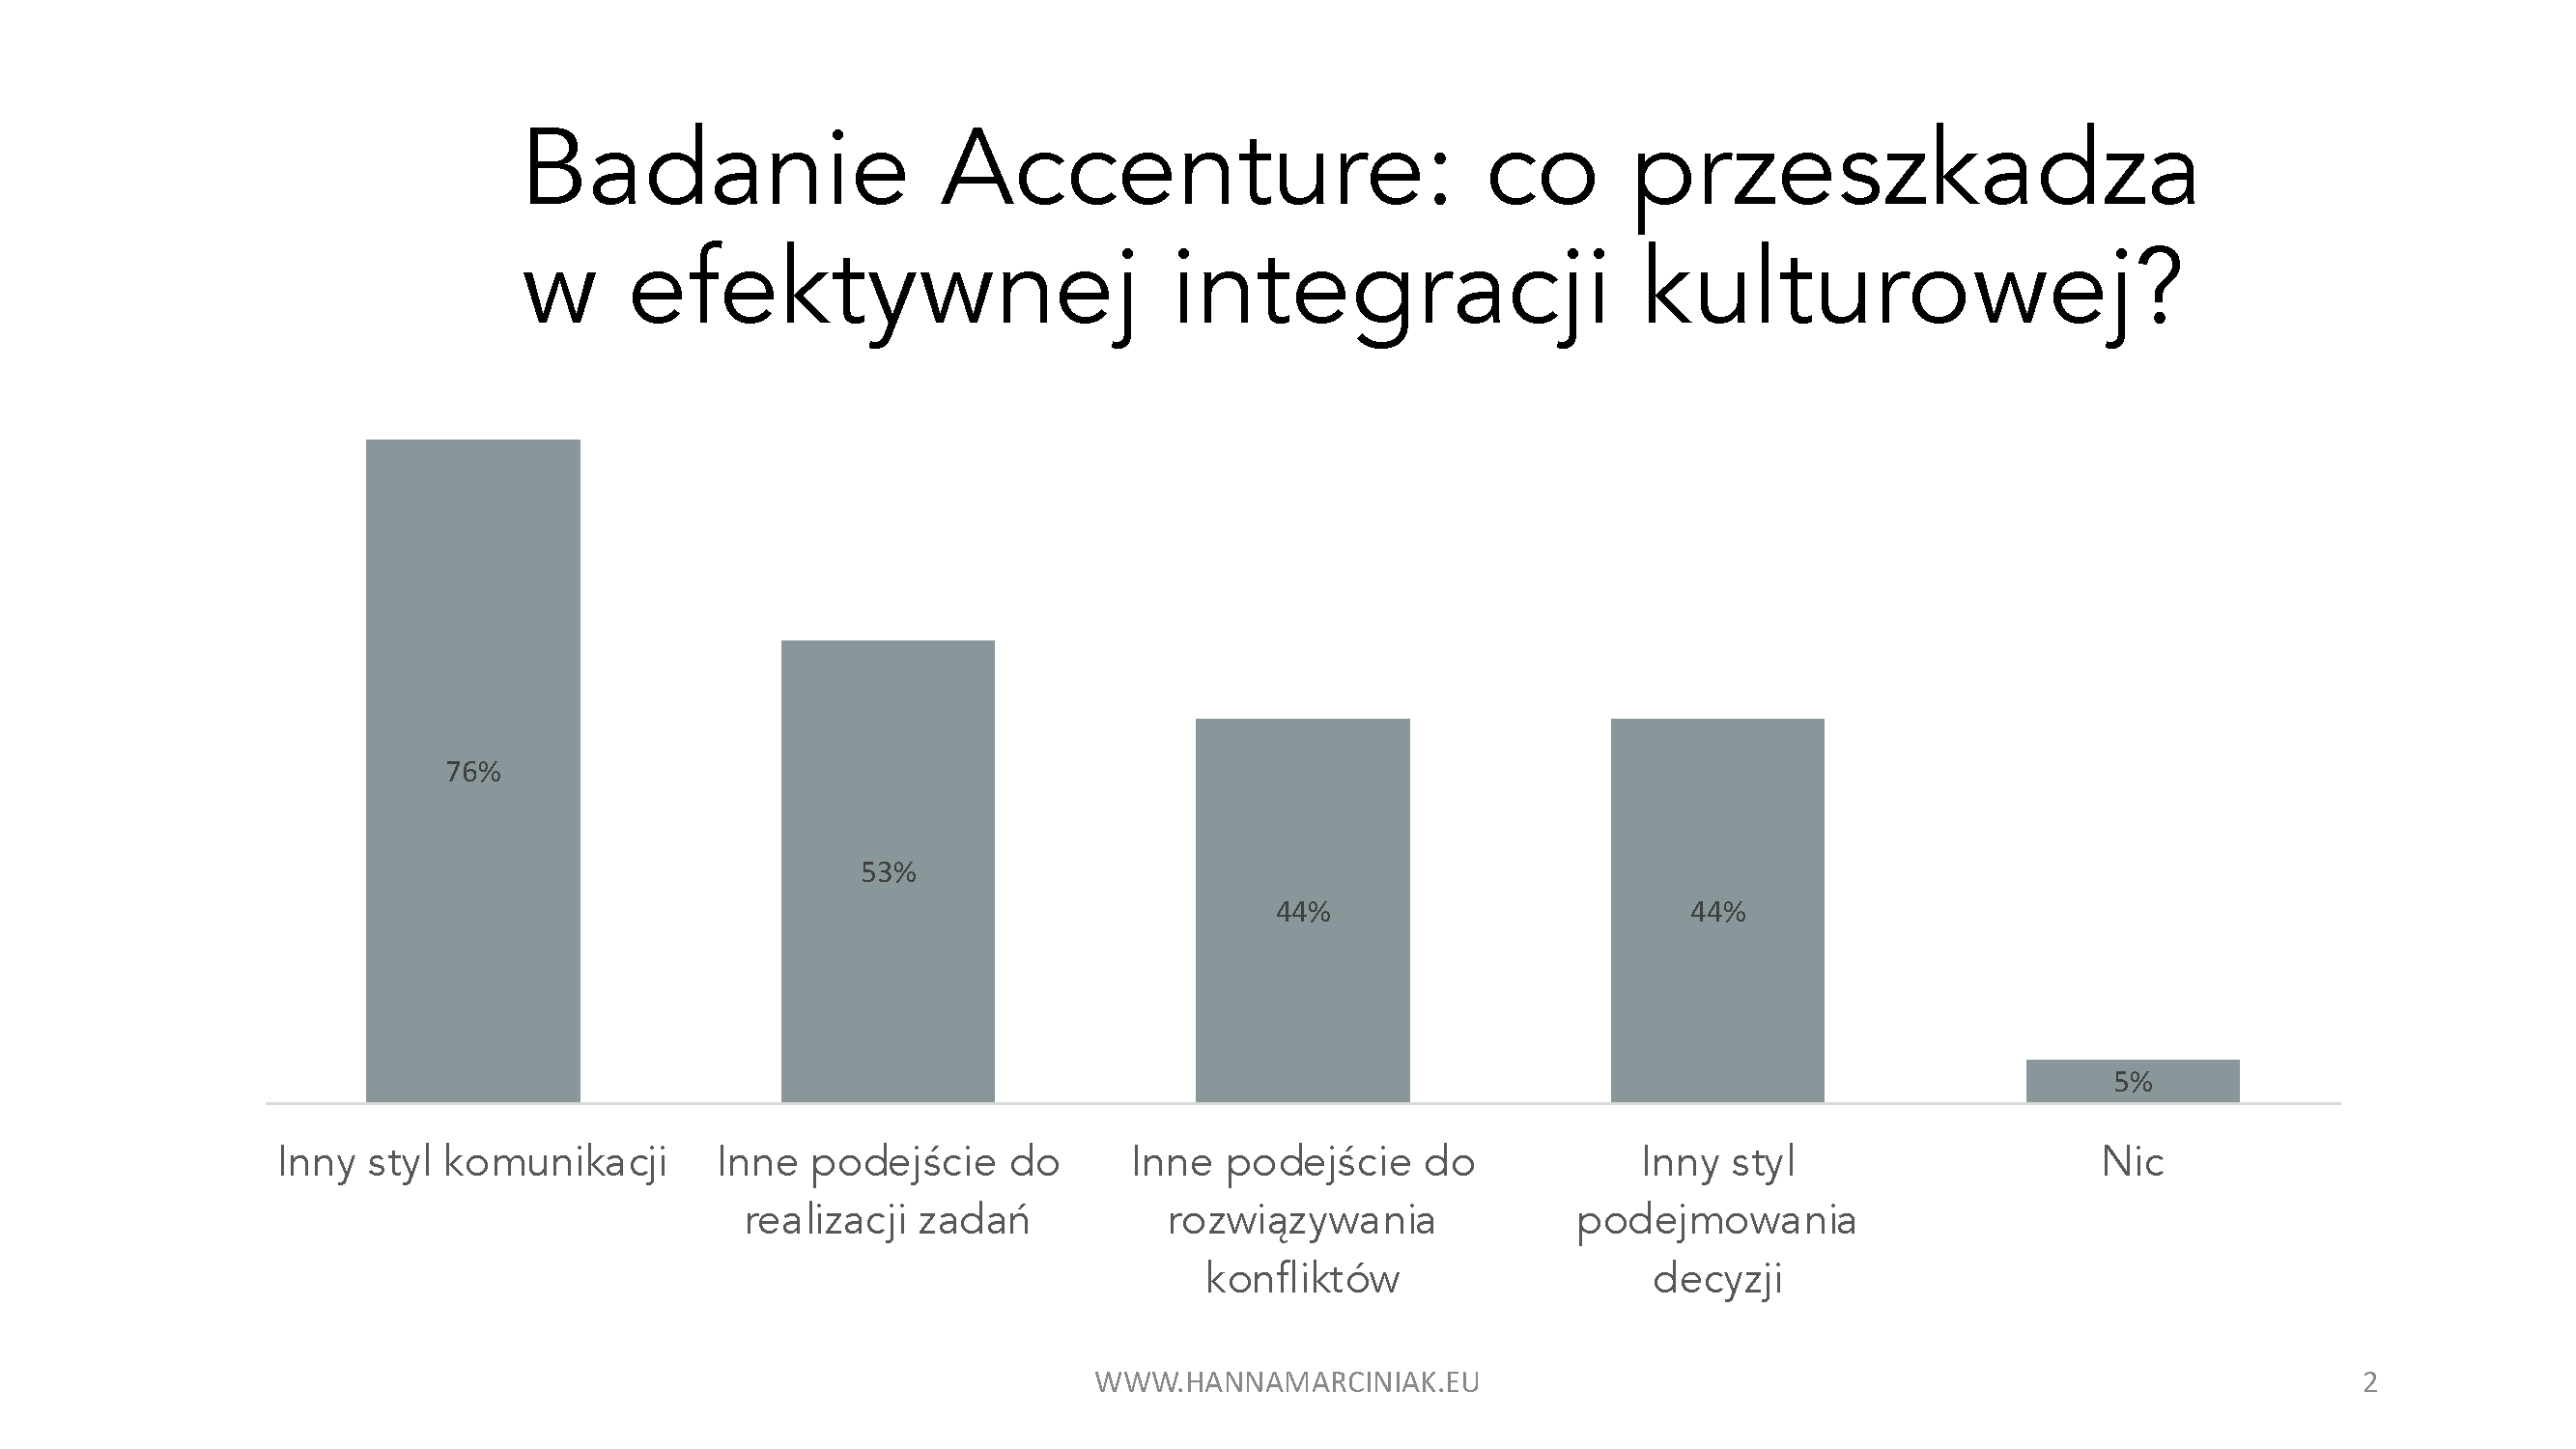 Badanie Accenture: co przeszkadza w efektywnej integracji kulturowej? 76% ankietowanych odpowiedziało, że Inny styl komunikacji. 53%: inne podejście do realizacji zadań. 44%: Inne podejście do rozwiązywania konfliktów. 44%: Inny styl podejmowania decyzji. 5%: Nic.